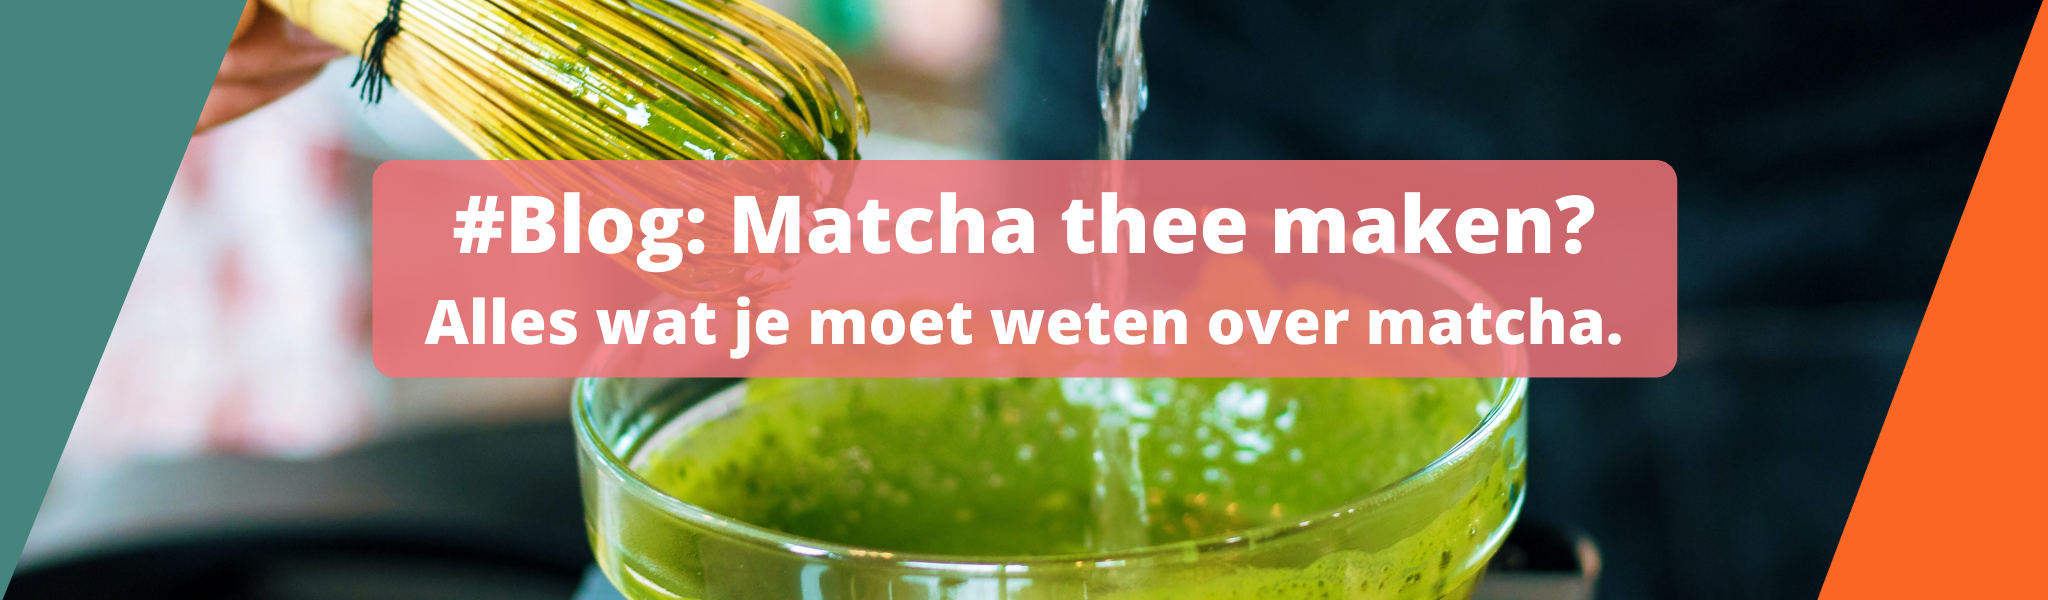 Blog: Matcha thee maken? Lees hier alles wat je moet weten over matcha thee.